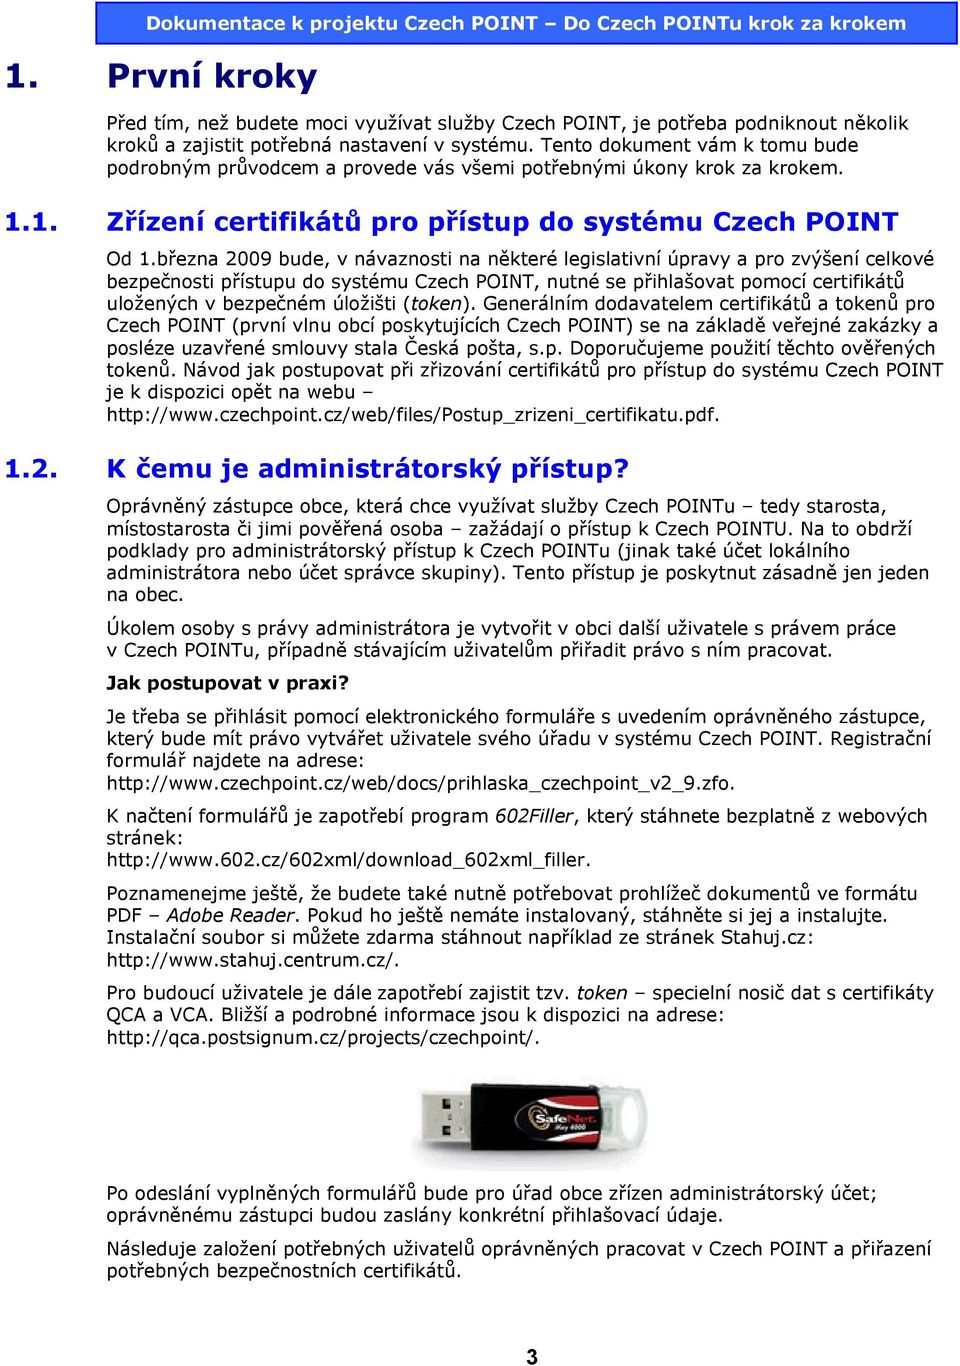 března 2009 bude, v návaznosti na některé legislativní úpravy a pro zvýšení celkové bezpečnosti přístupu do systému Czech POINT, nutné se přihlašovat pomocí certifikátů uložených v bezpečném úložišti